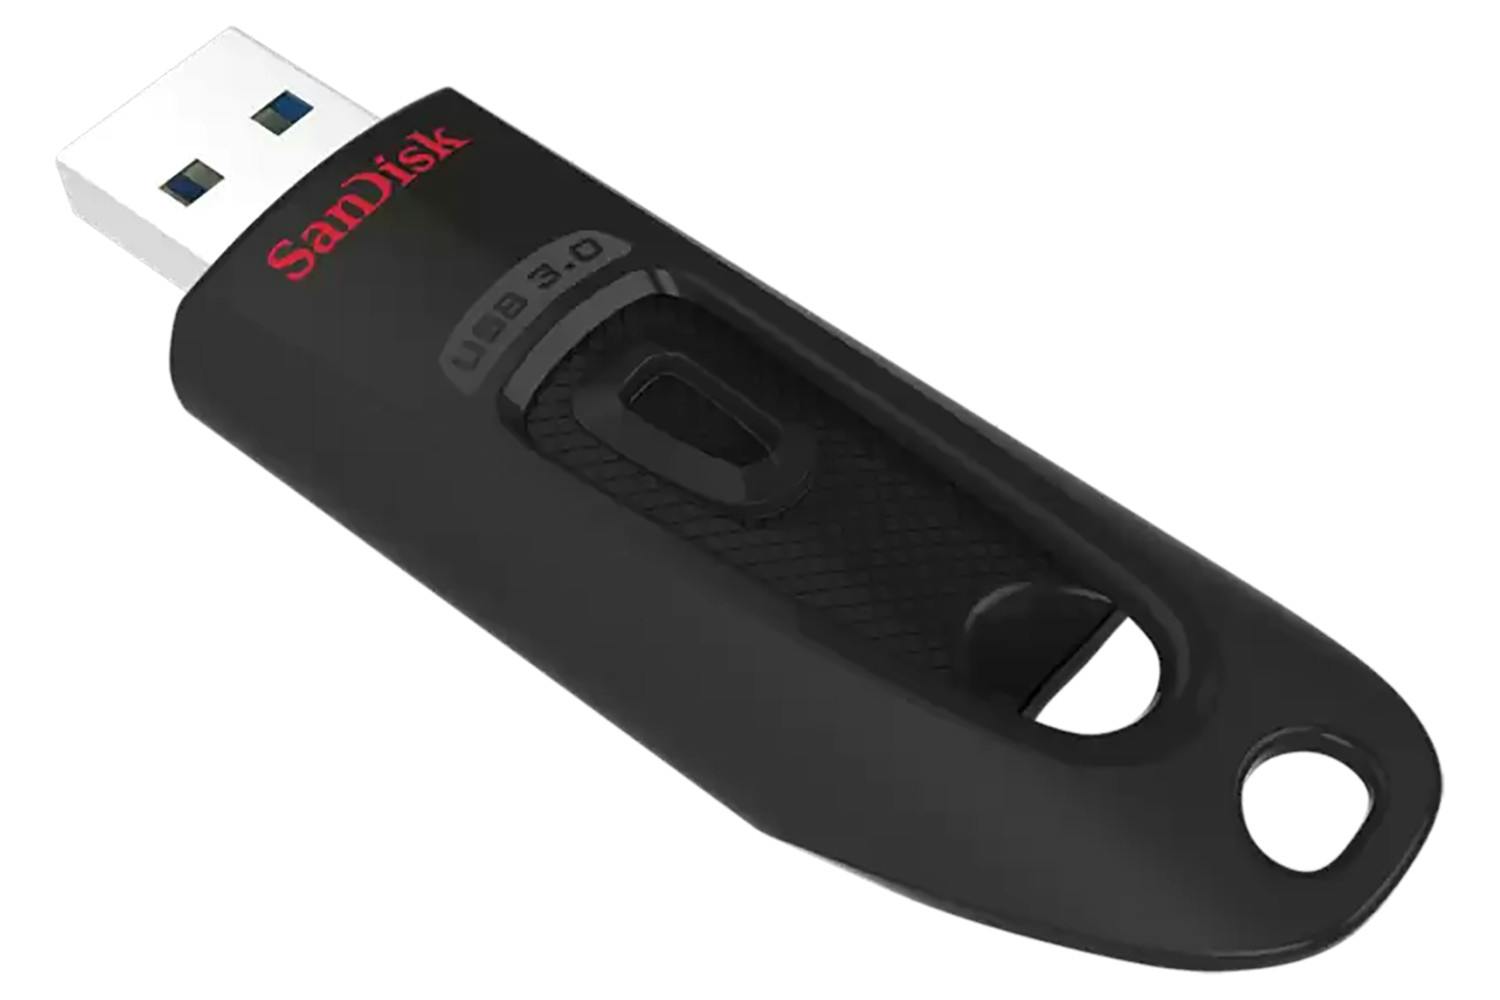 SanDisk Ultra USB 3.0 Flash Drive | 32GB